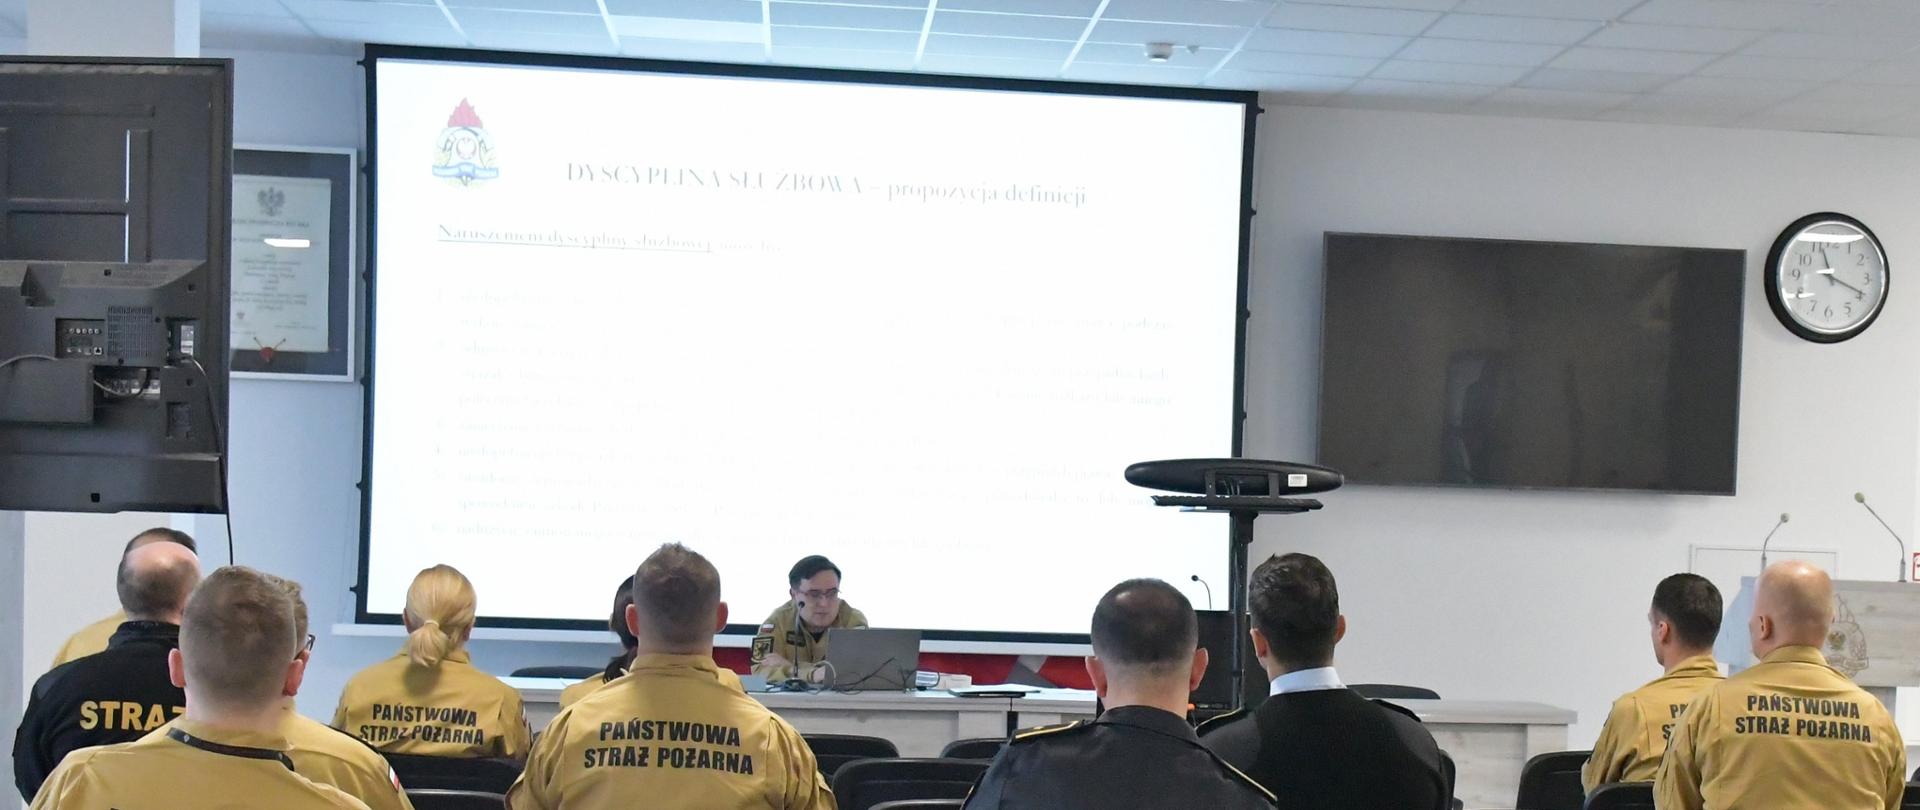 Strażacy w mundurach koloru pisakowego siedzą na krzesłach przed nimi za stołem siedzi funkcjonariusz Państwowej Straży Pożarnej siedzi przed laptopem i wykłada za nim na ekranie wyświetlane są tematy szkolenia obok znajduje się telewizor oraz zegar.